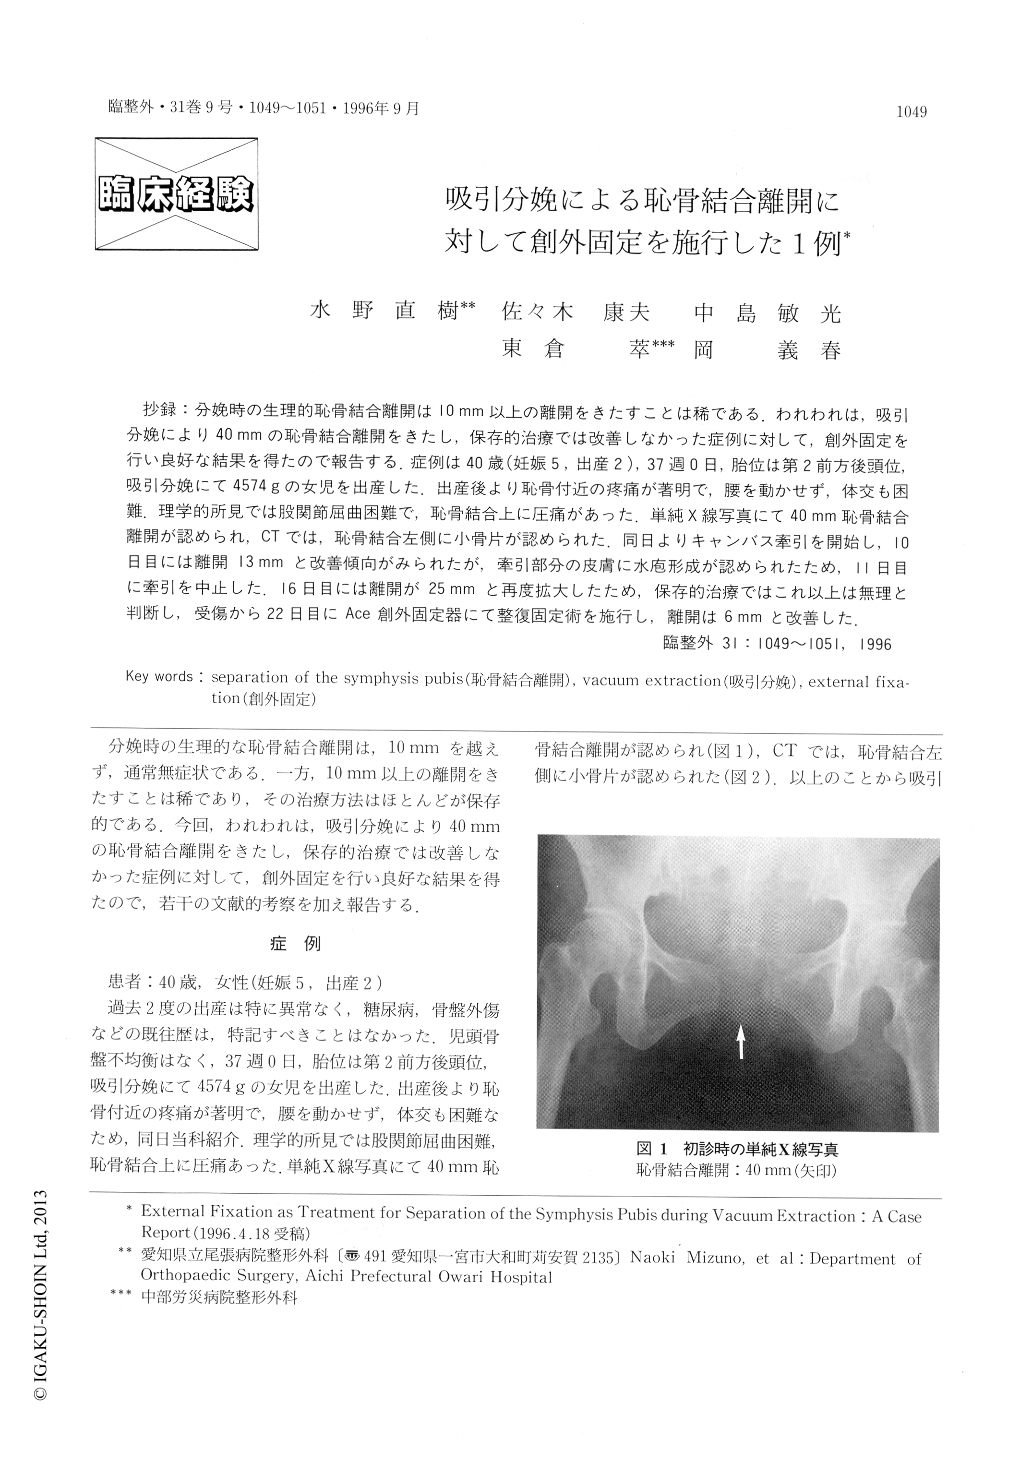 吸引分娩による恥骨結合離開に対して創外固定を施行した1例 臨床整形外科 31巻9号 医書 Jp